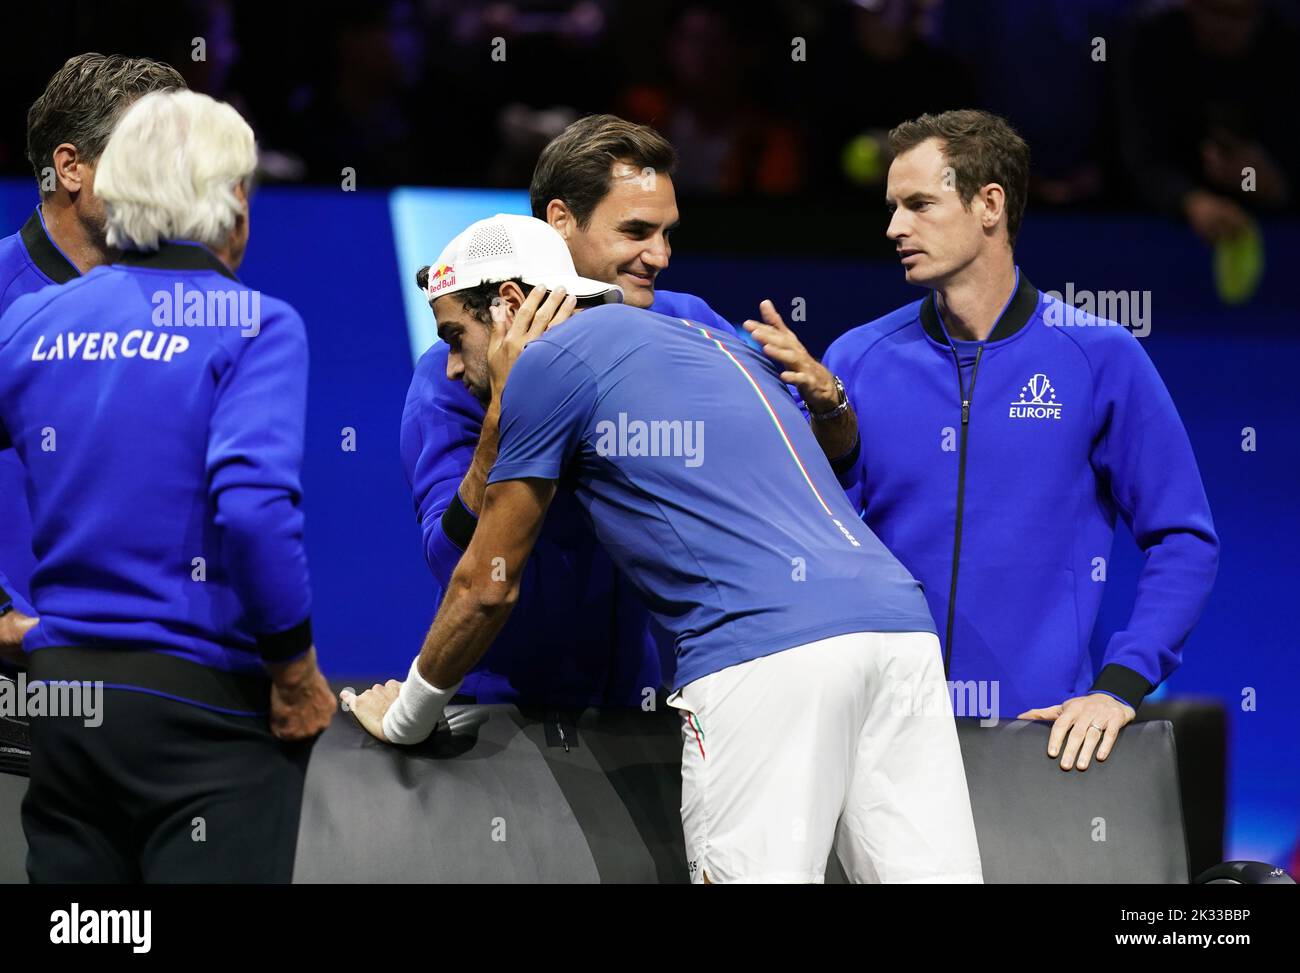 Matteo Berrettini, del Team Europe, celebra a Roger Federer y Andy Murray tras la victoria sobre Felix Auger Aliassime, del Team World, en el segundo día de la Copa Laver en el O2 Arena de Londres. Fecha de la foto: Sábado 24 de septiembre de 2022. Foto de stock